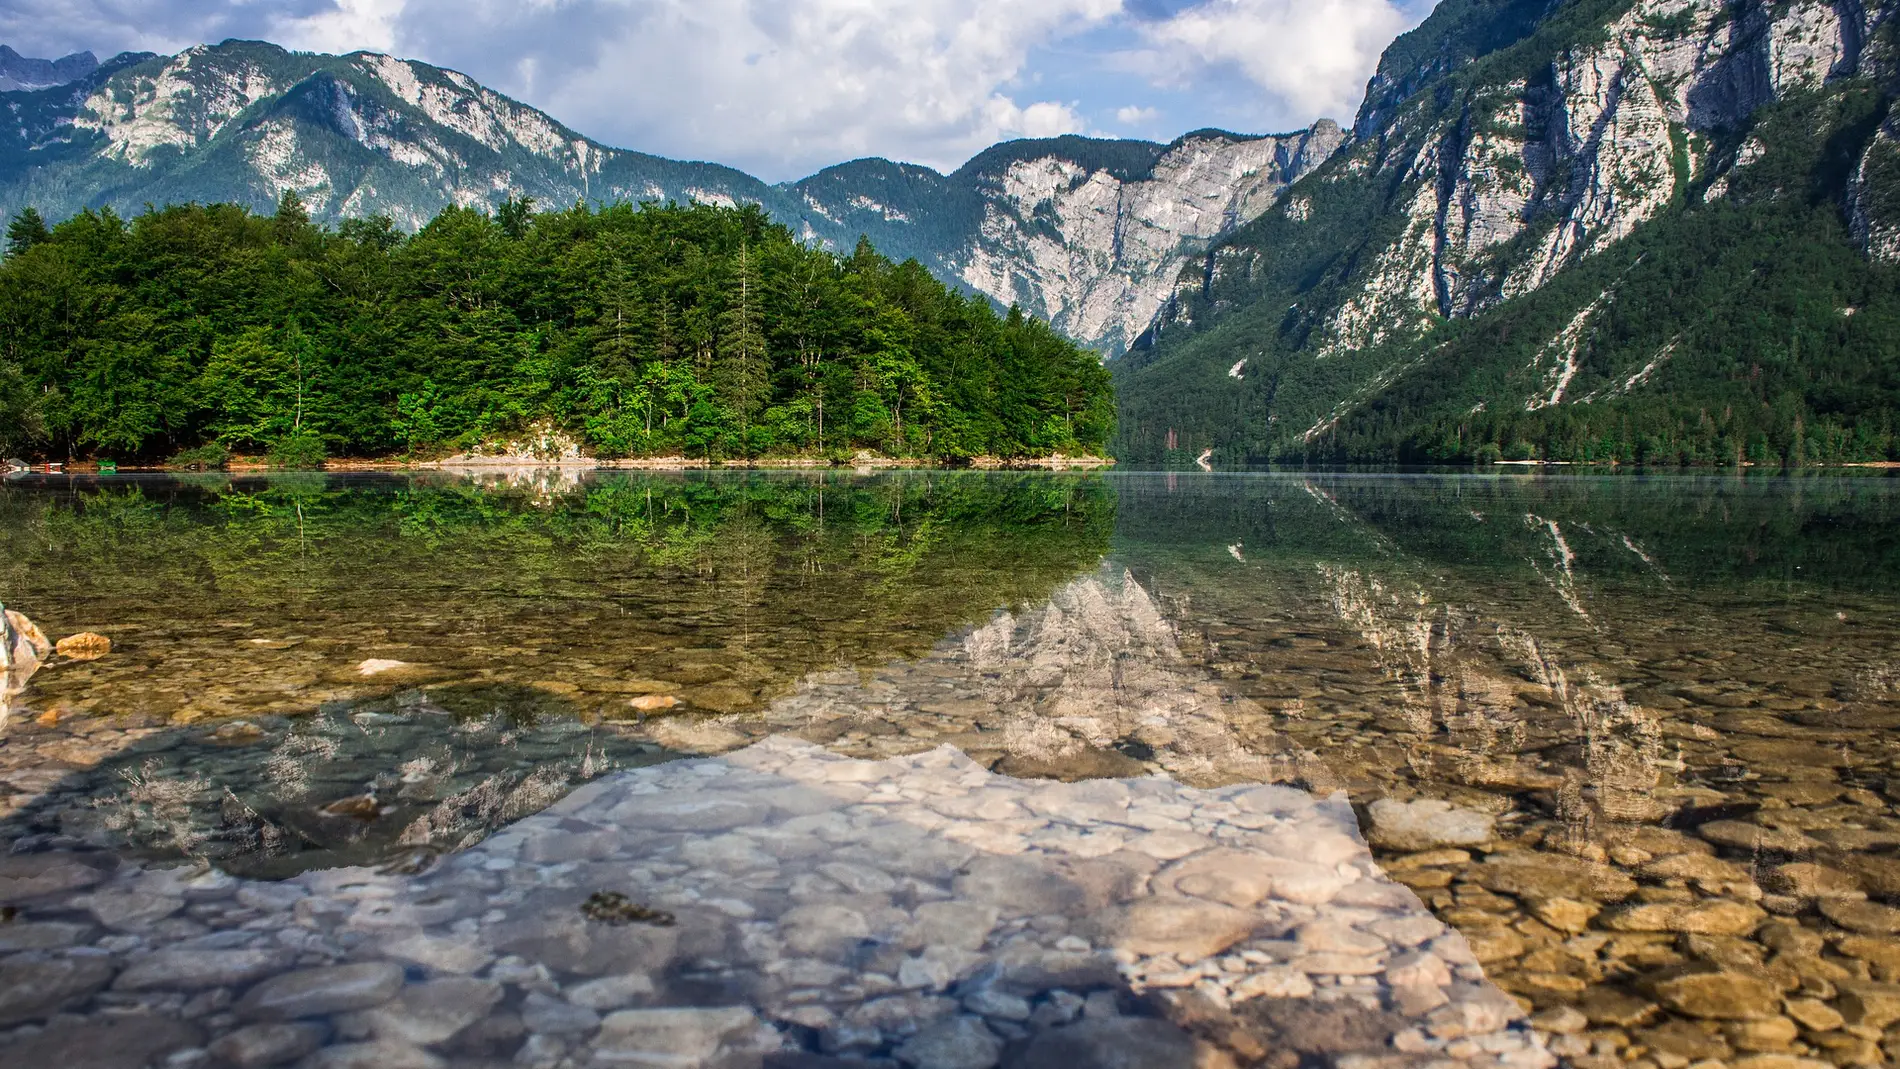  Una ruta por Eslovenia a través de sus lagos más pintorescos